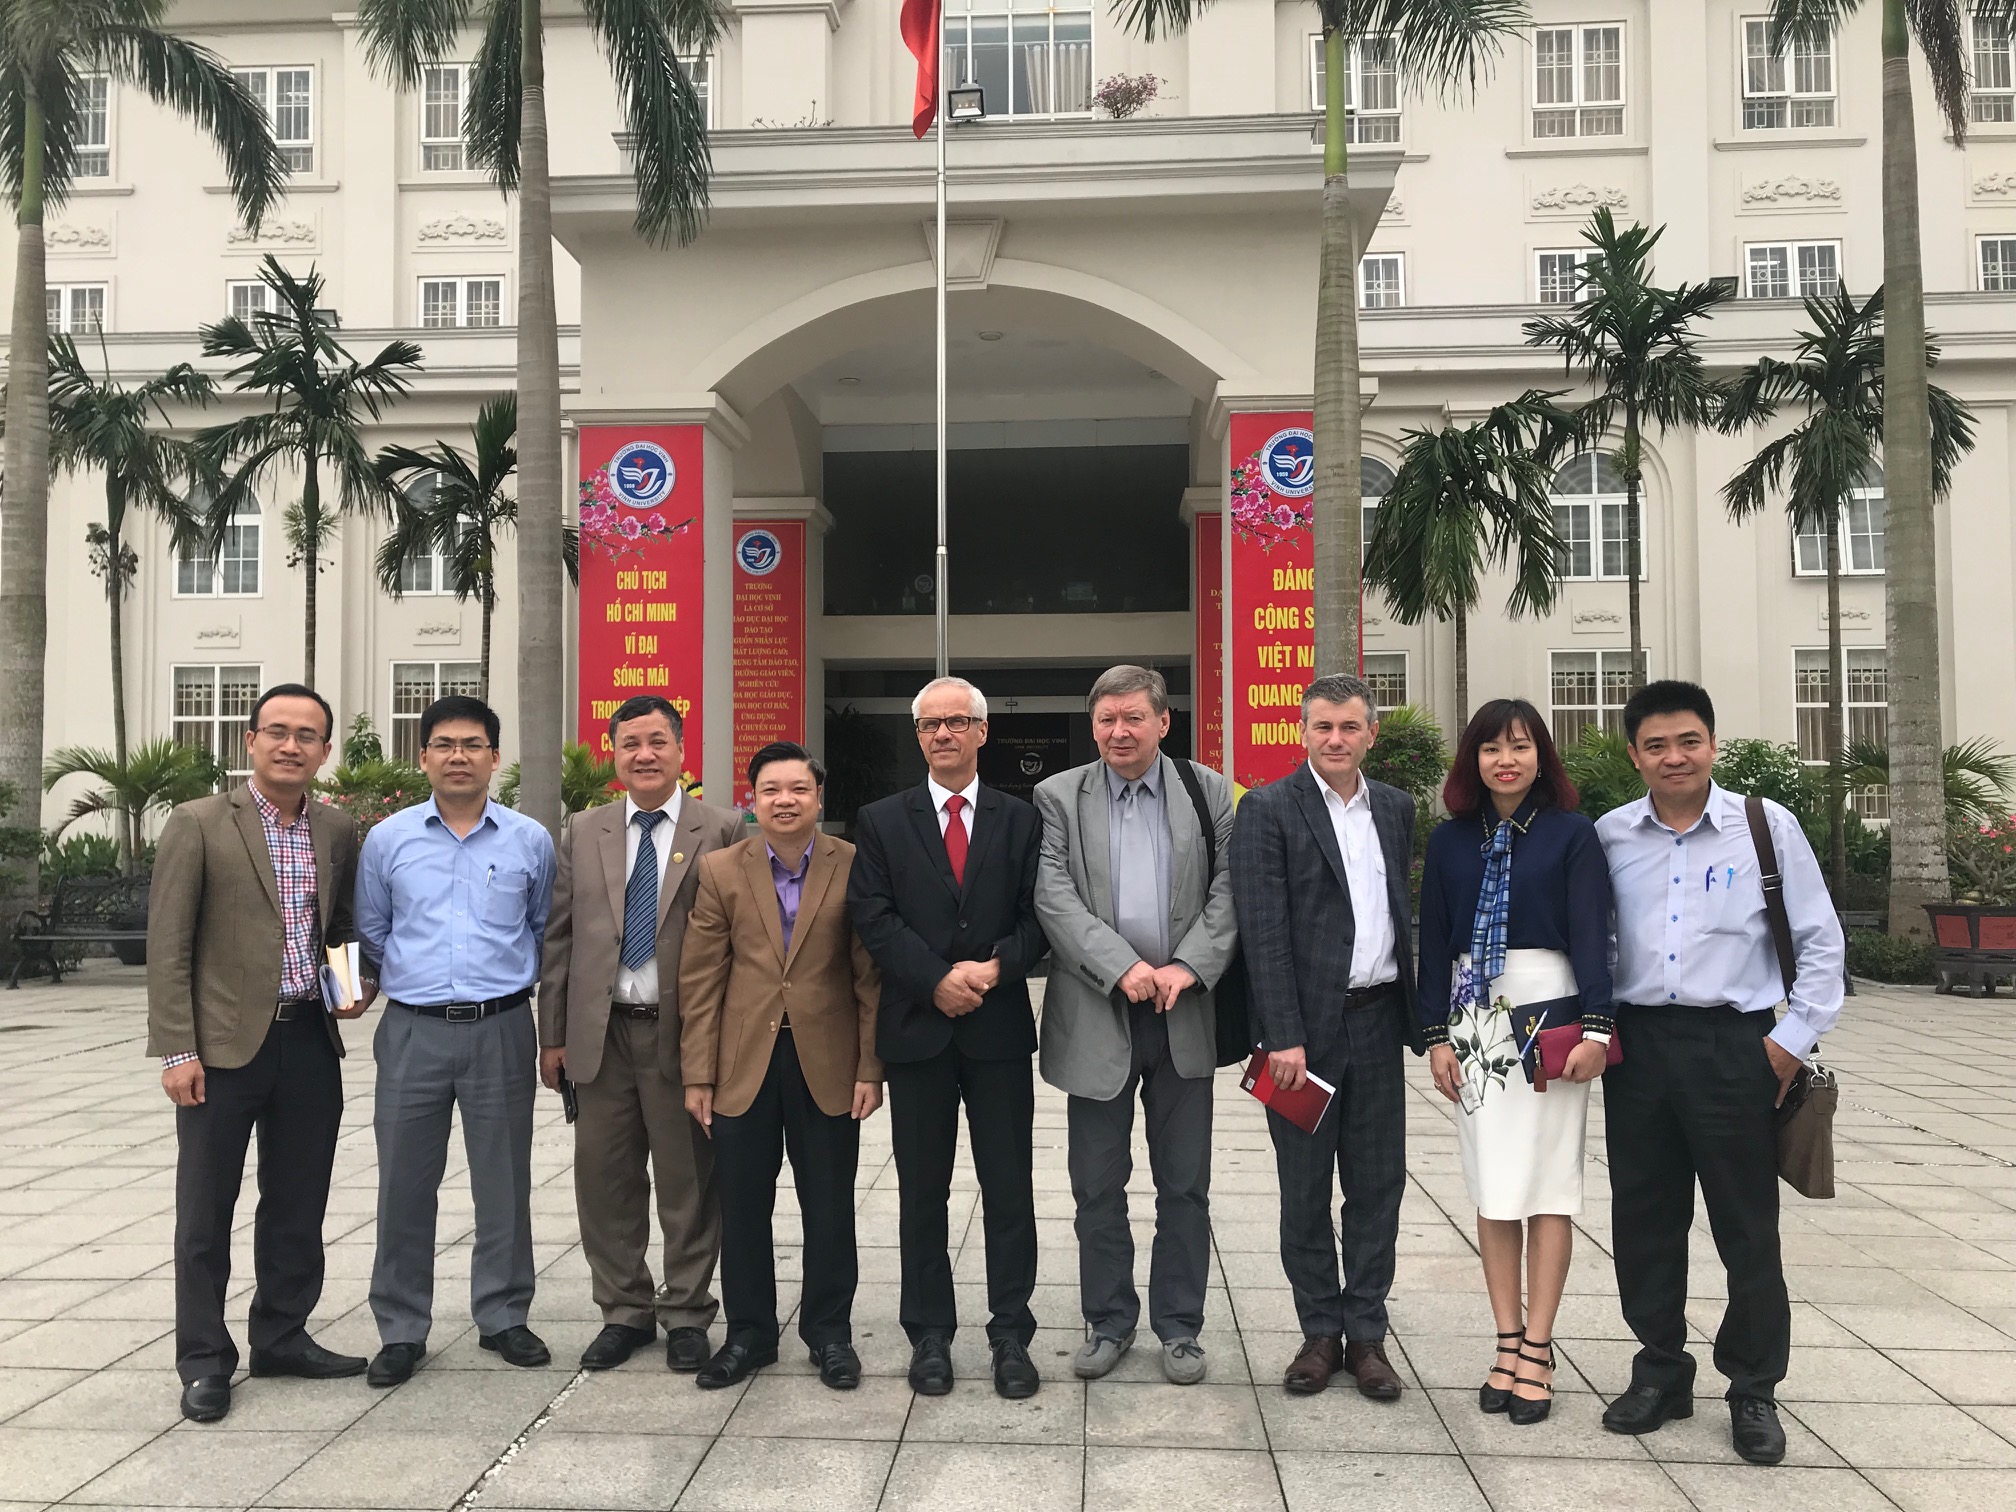 Liên kết nghiên cứu khoa học và xuất bản sách chuyên khảo giữa các Trường Đại học ở Việt Nam với Trường Đại học Zeilona Gora Ba Lan